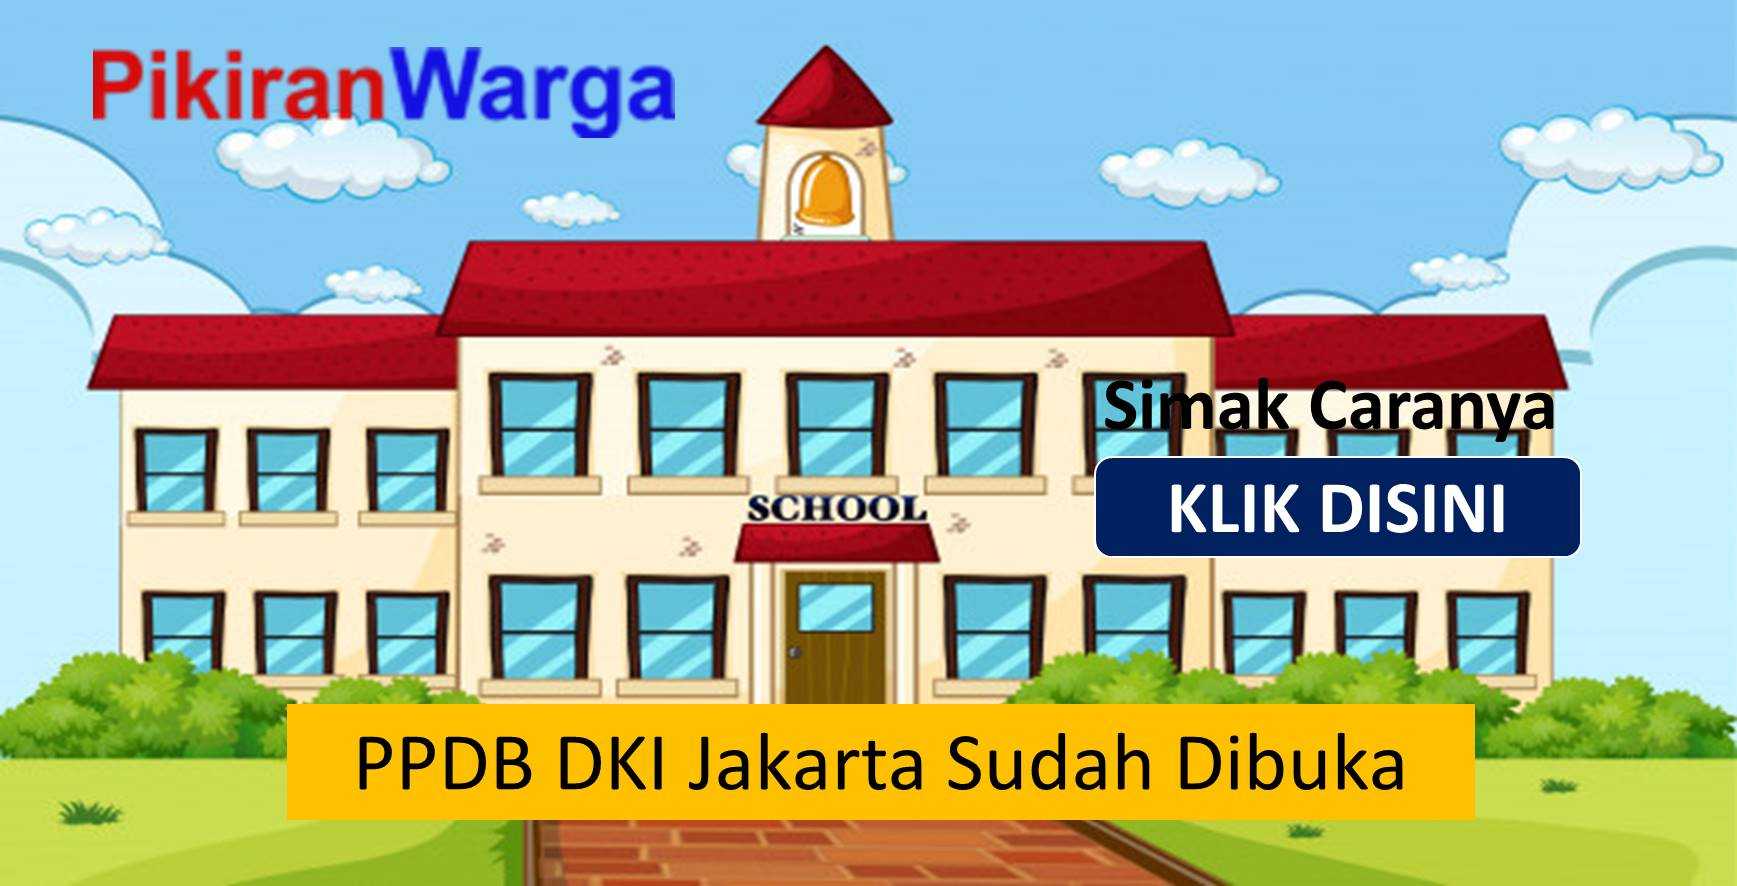 Syarat Masuk PPDB DKI Jakarta